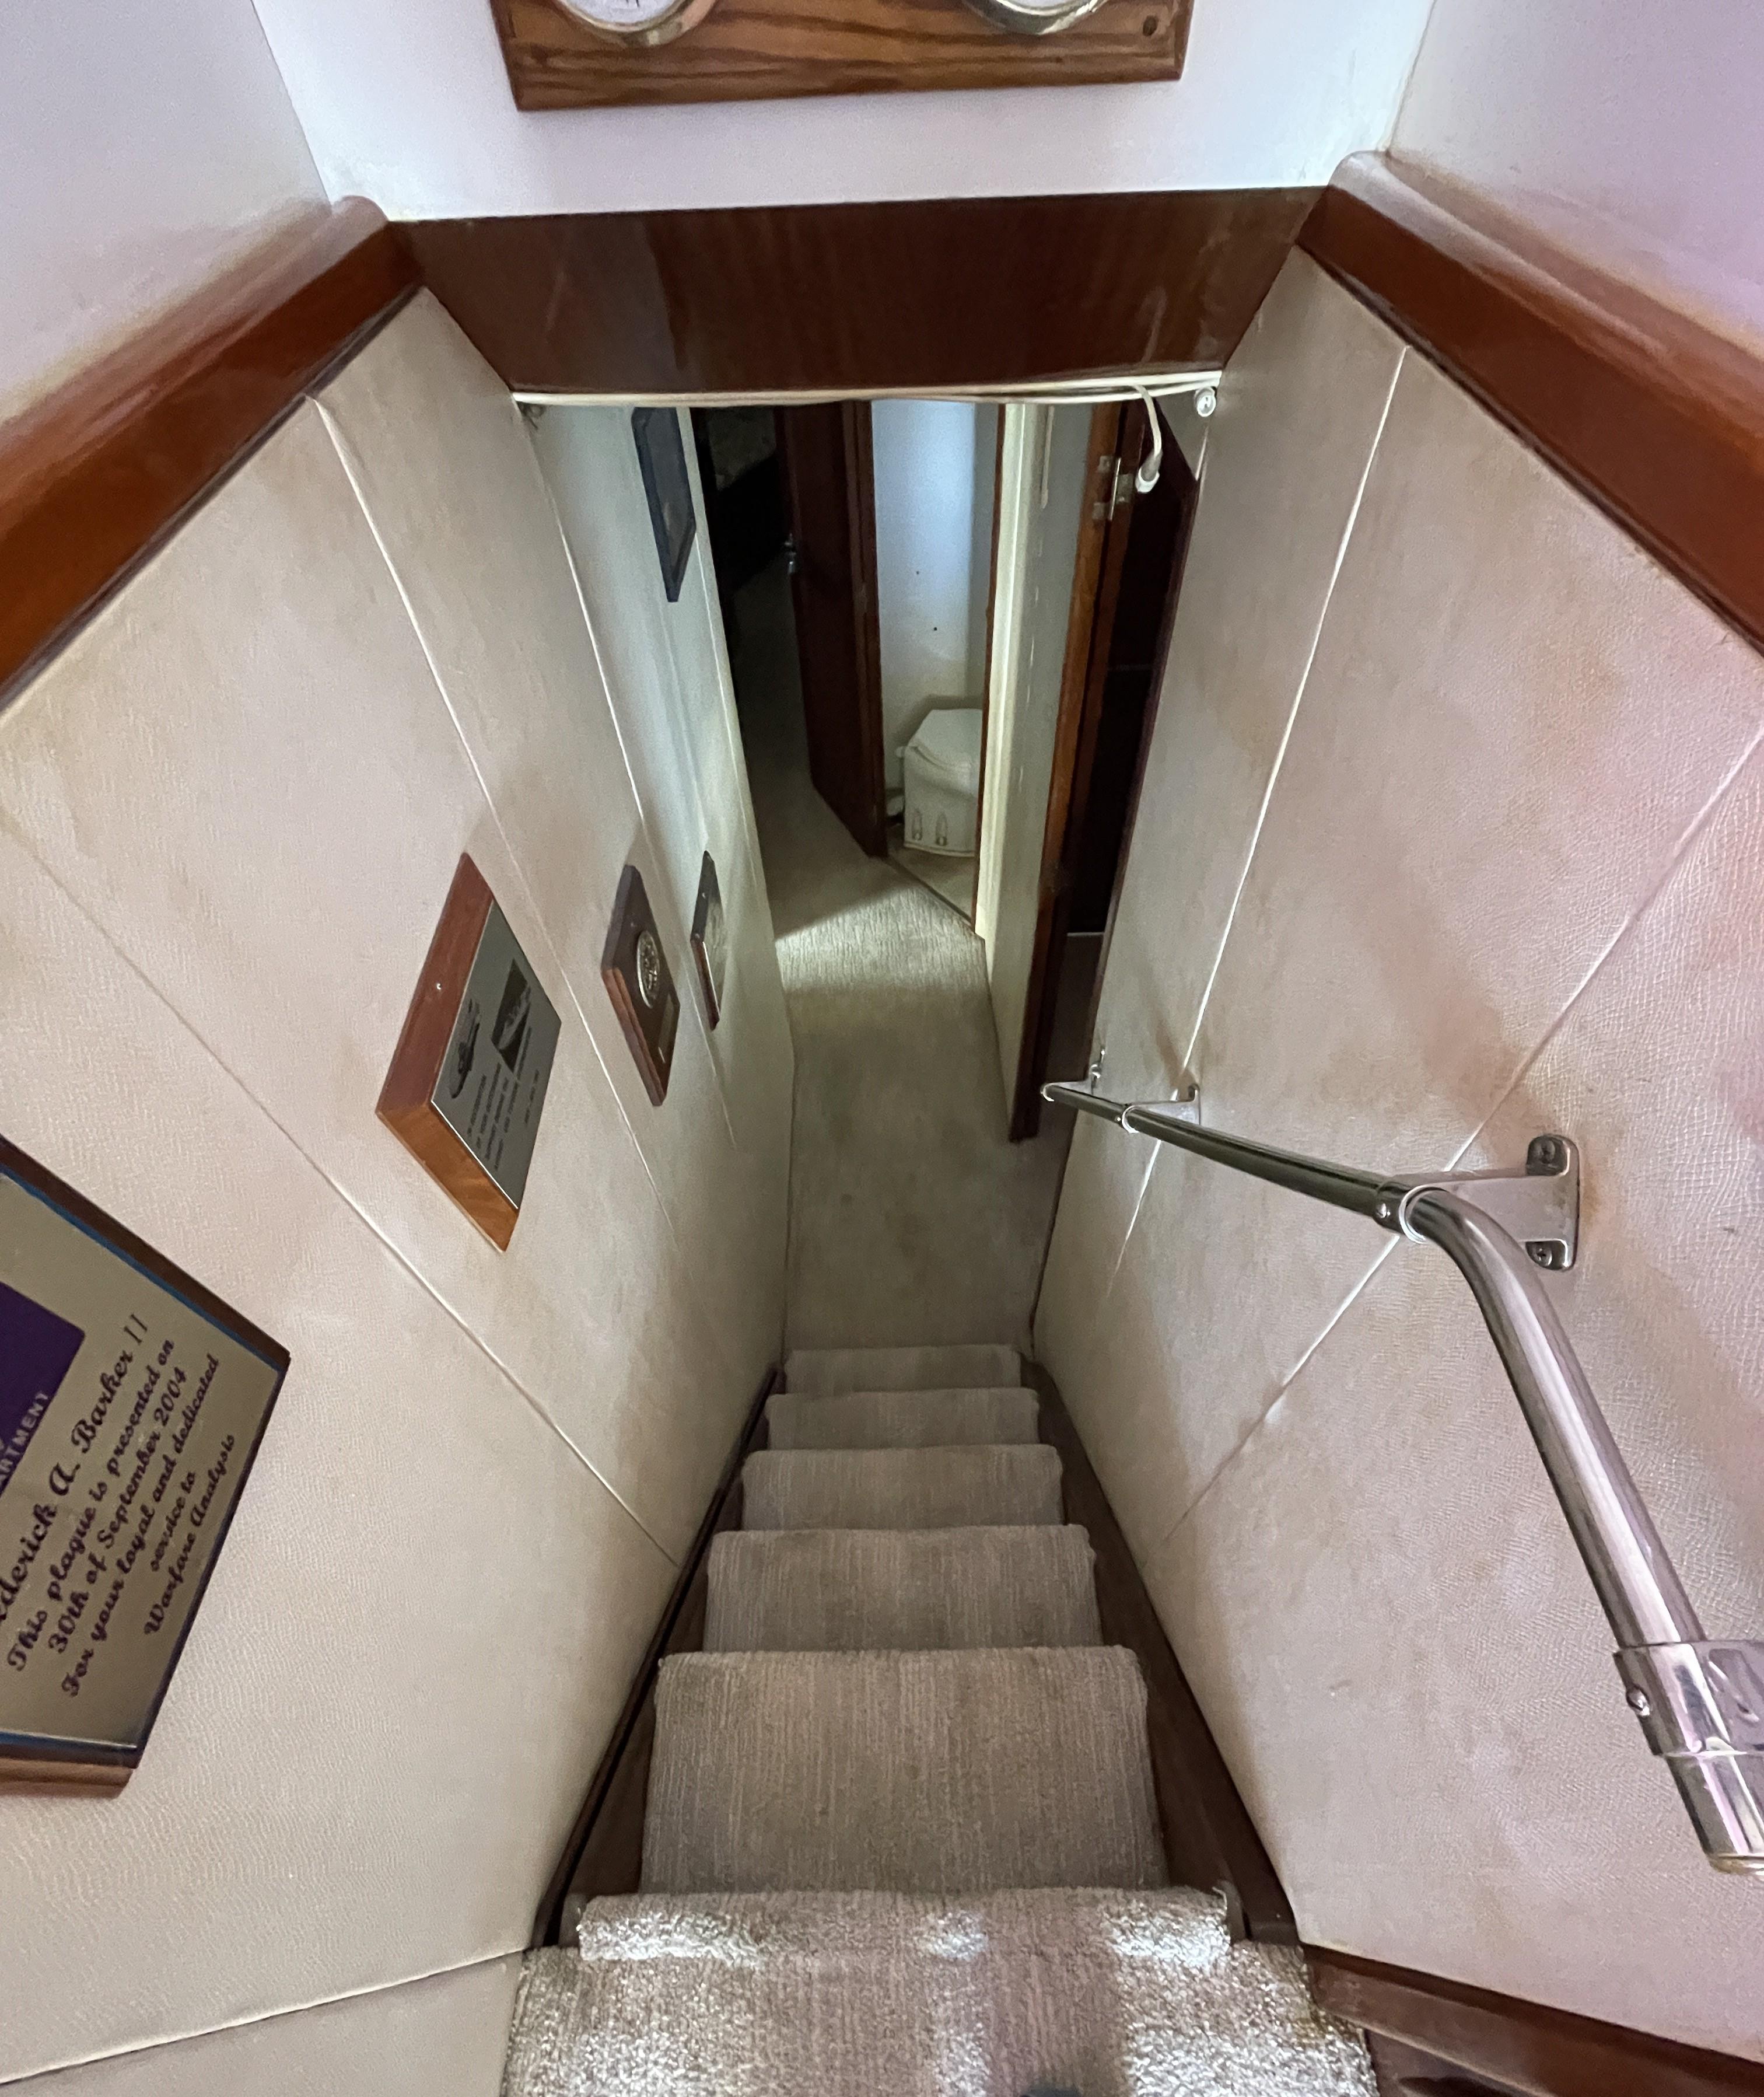 Stairs Leading Below Deck